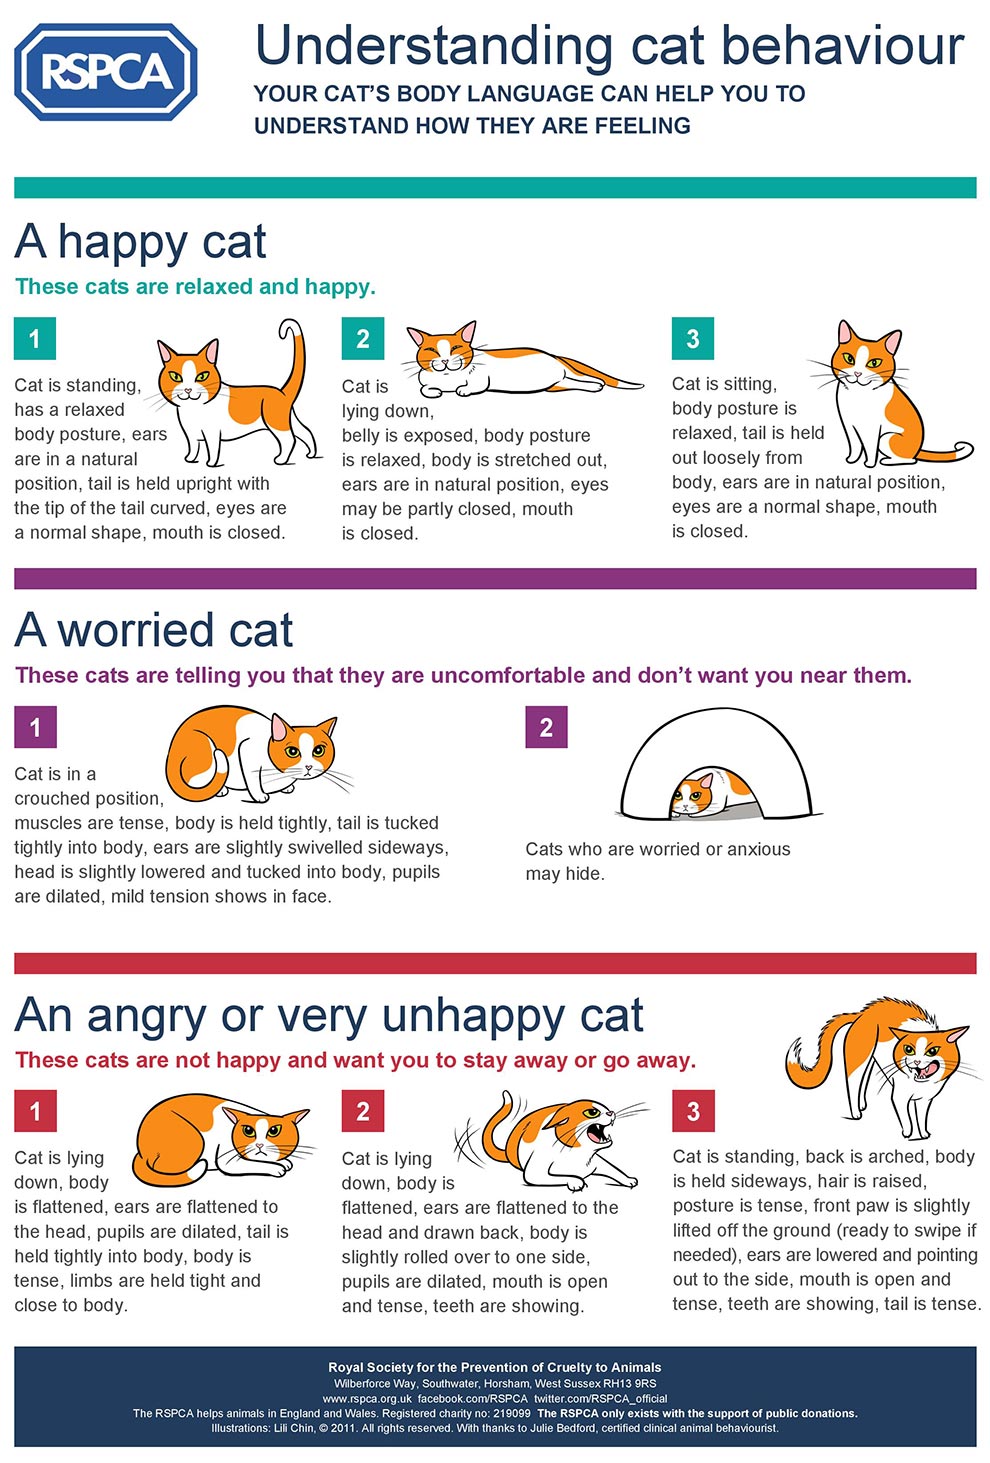 RSPCA Understanding Cat Behaviour